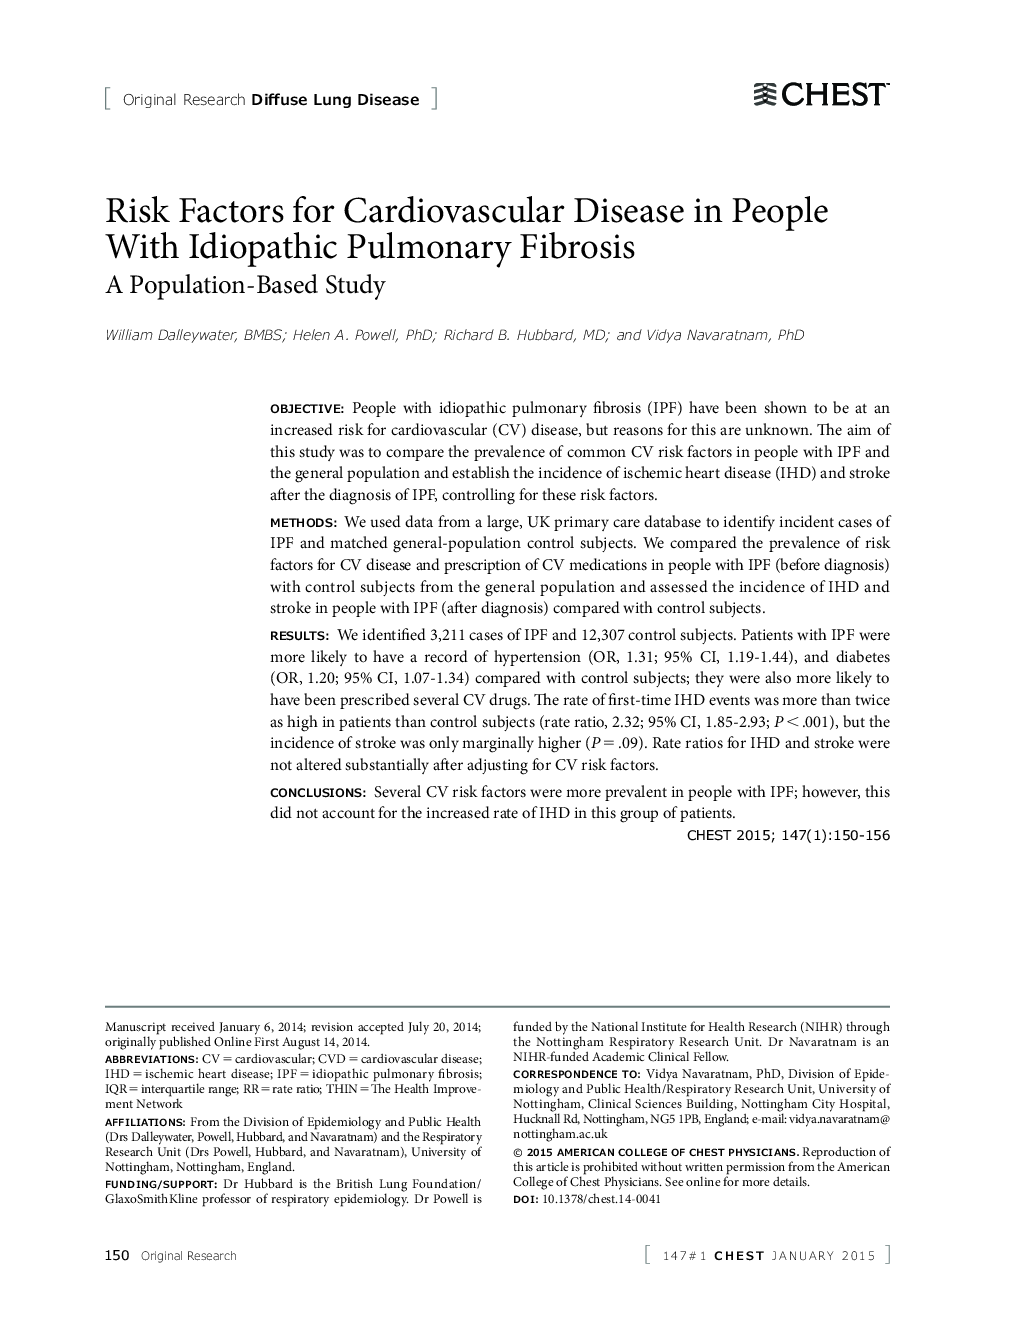 عوامل خطرساز بیماریهای قلبی عروقی در افراد مبتلا به فیبروز ریه ایدیوپاتیک 